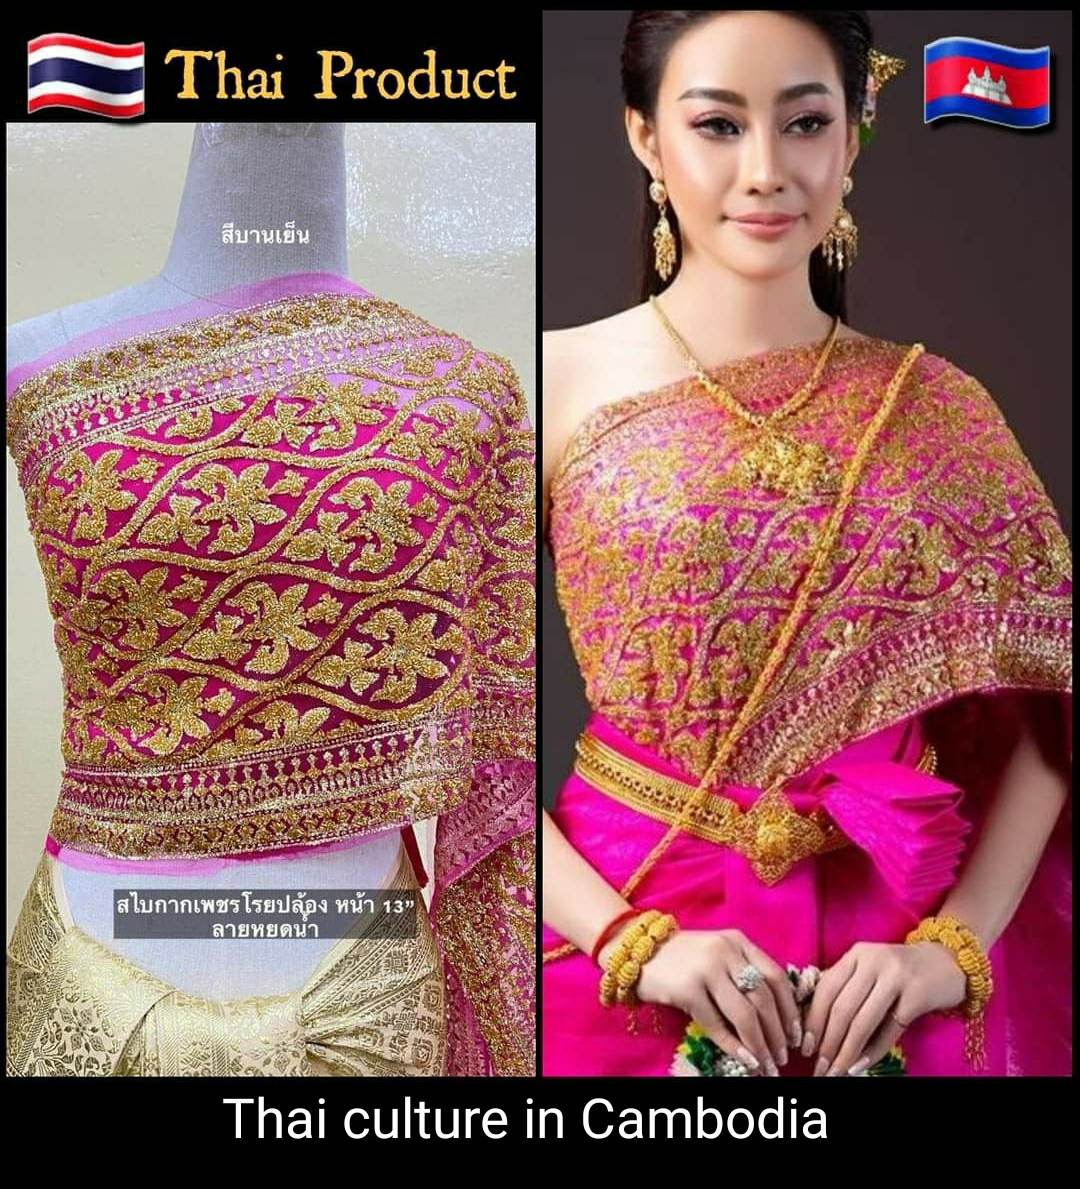 Sbai Thai culture in Cambodia